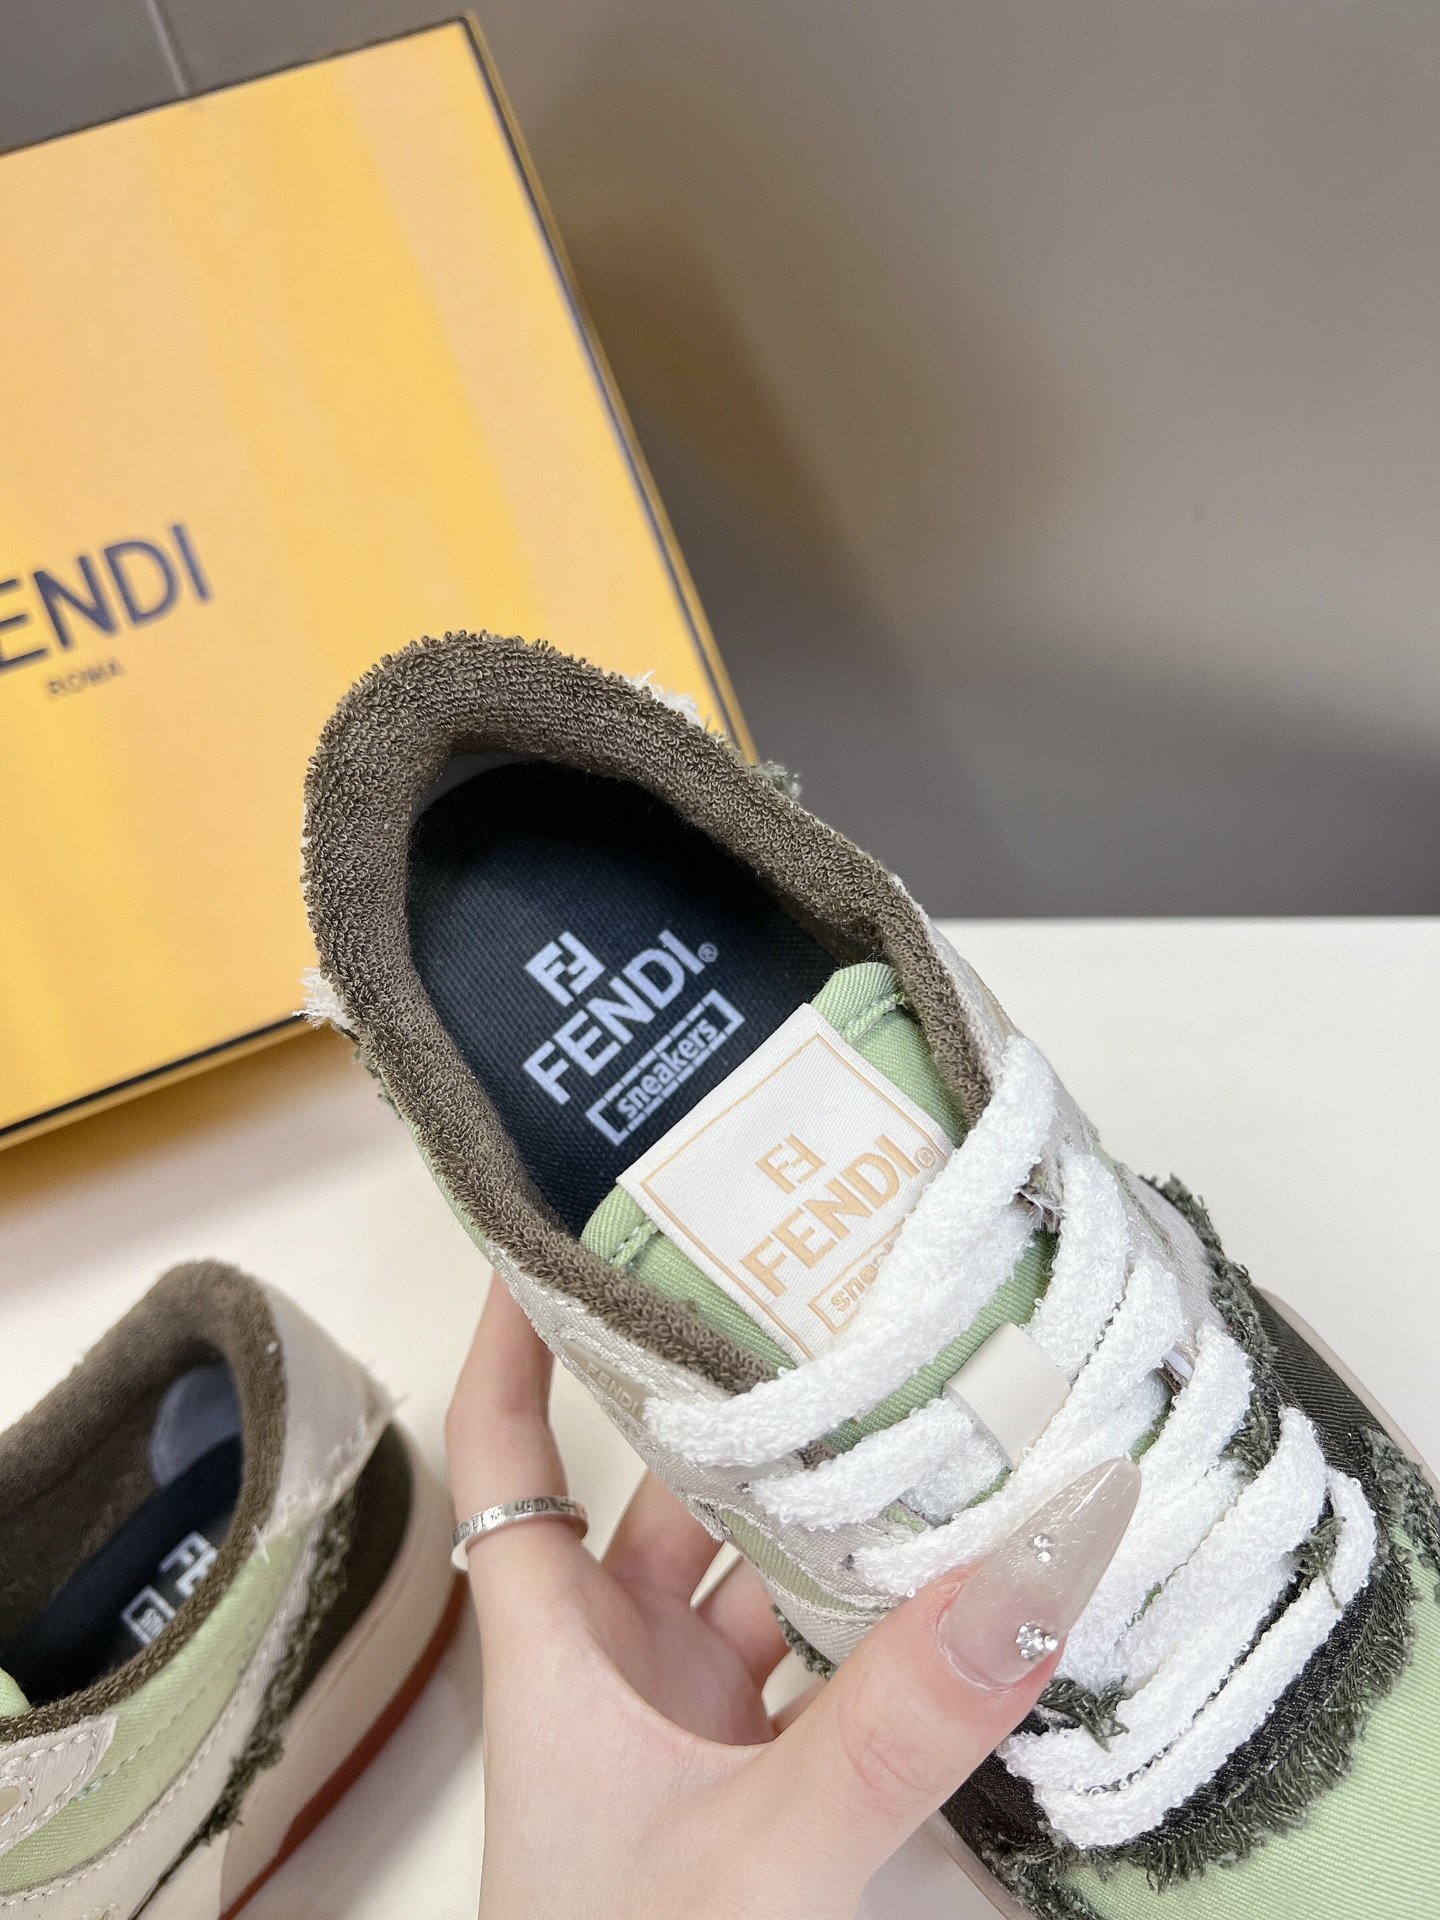 男装10Fendi芬迪爆款系列情侣休闲运动鞋FDmatch原版RMB7300购入一比一复刻设计师KimJ